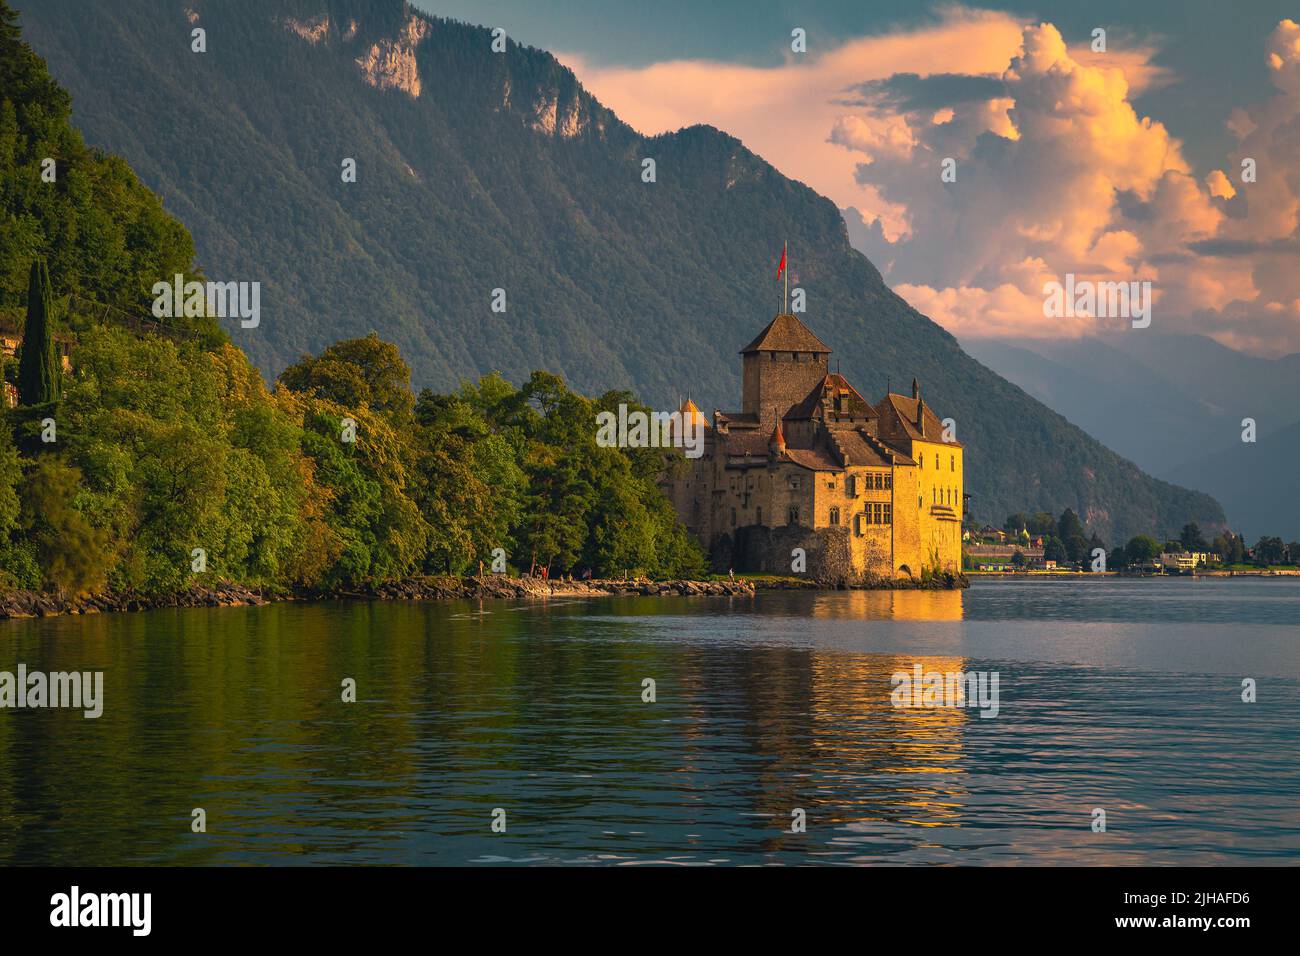 Destination touristique et touristique suisse, château de Chillon sur les rives du lac Léman au coucher du soleil, Montreux, Suisse, Europe Banque D'Images